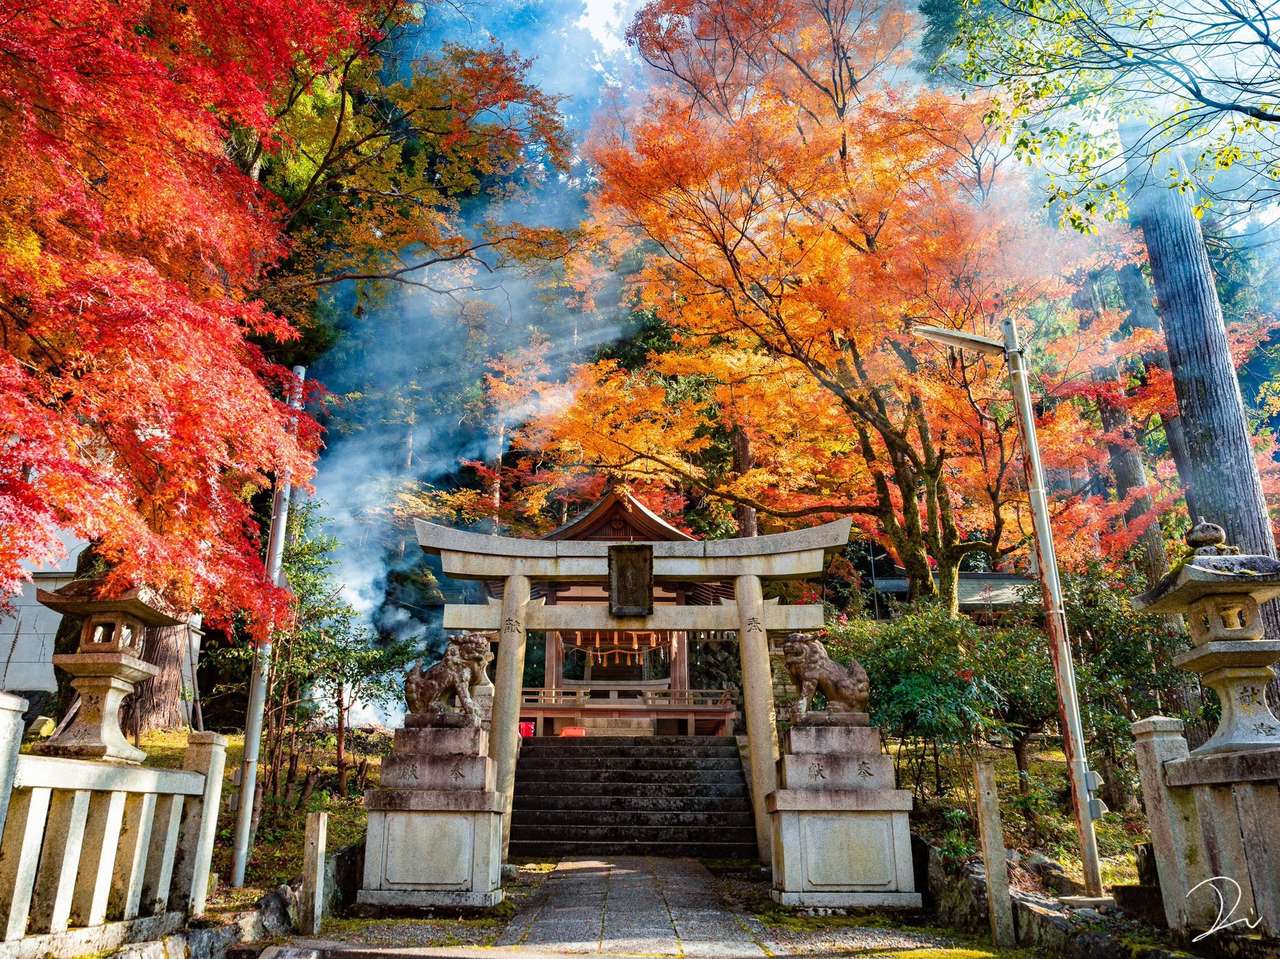 O imagine frumoasă a Japoniei puzzle online